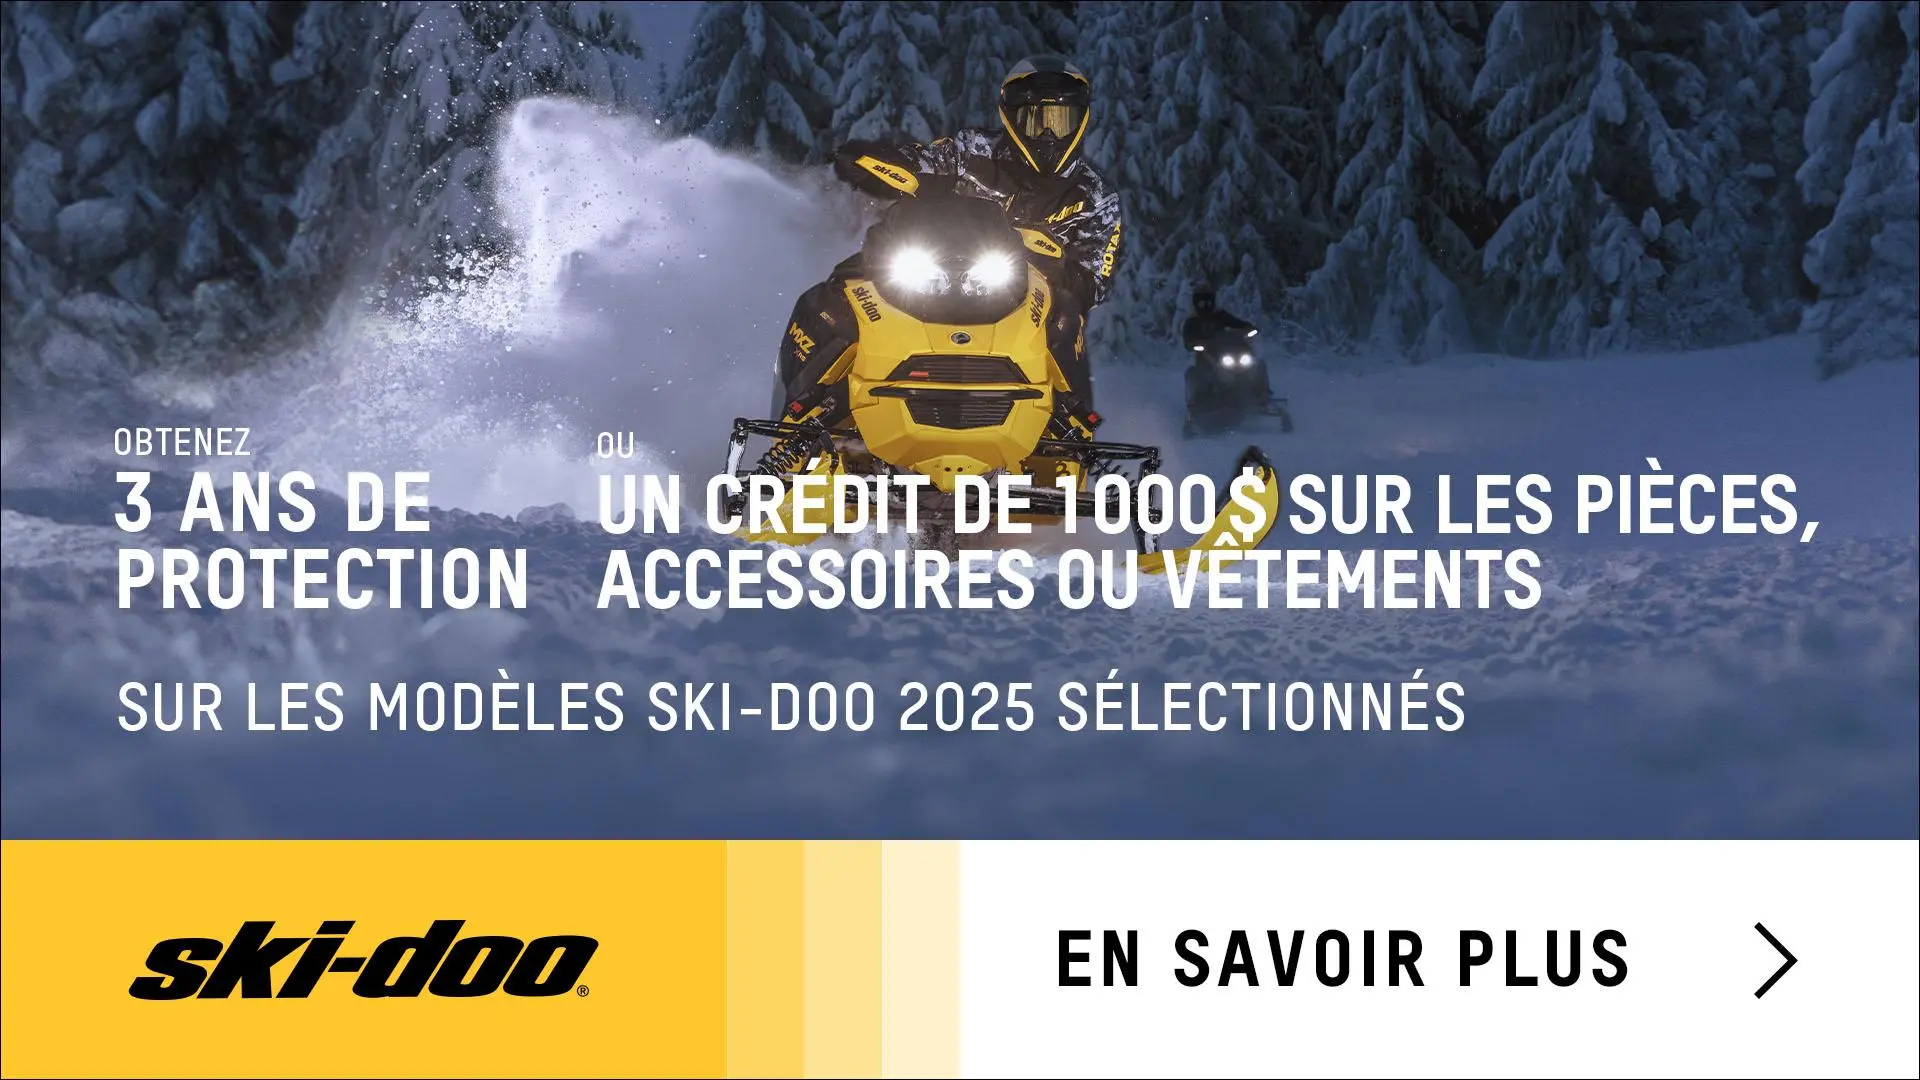 Obtenez 3 ans de protection ou un crédit de 1 000 $ sur les pièces, accessoires ou vêtements à l’achat d’un modèle Ski-Doo 2025 sélectionné